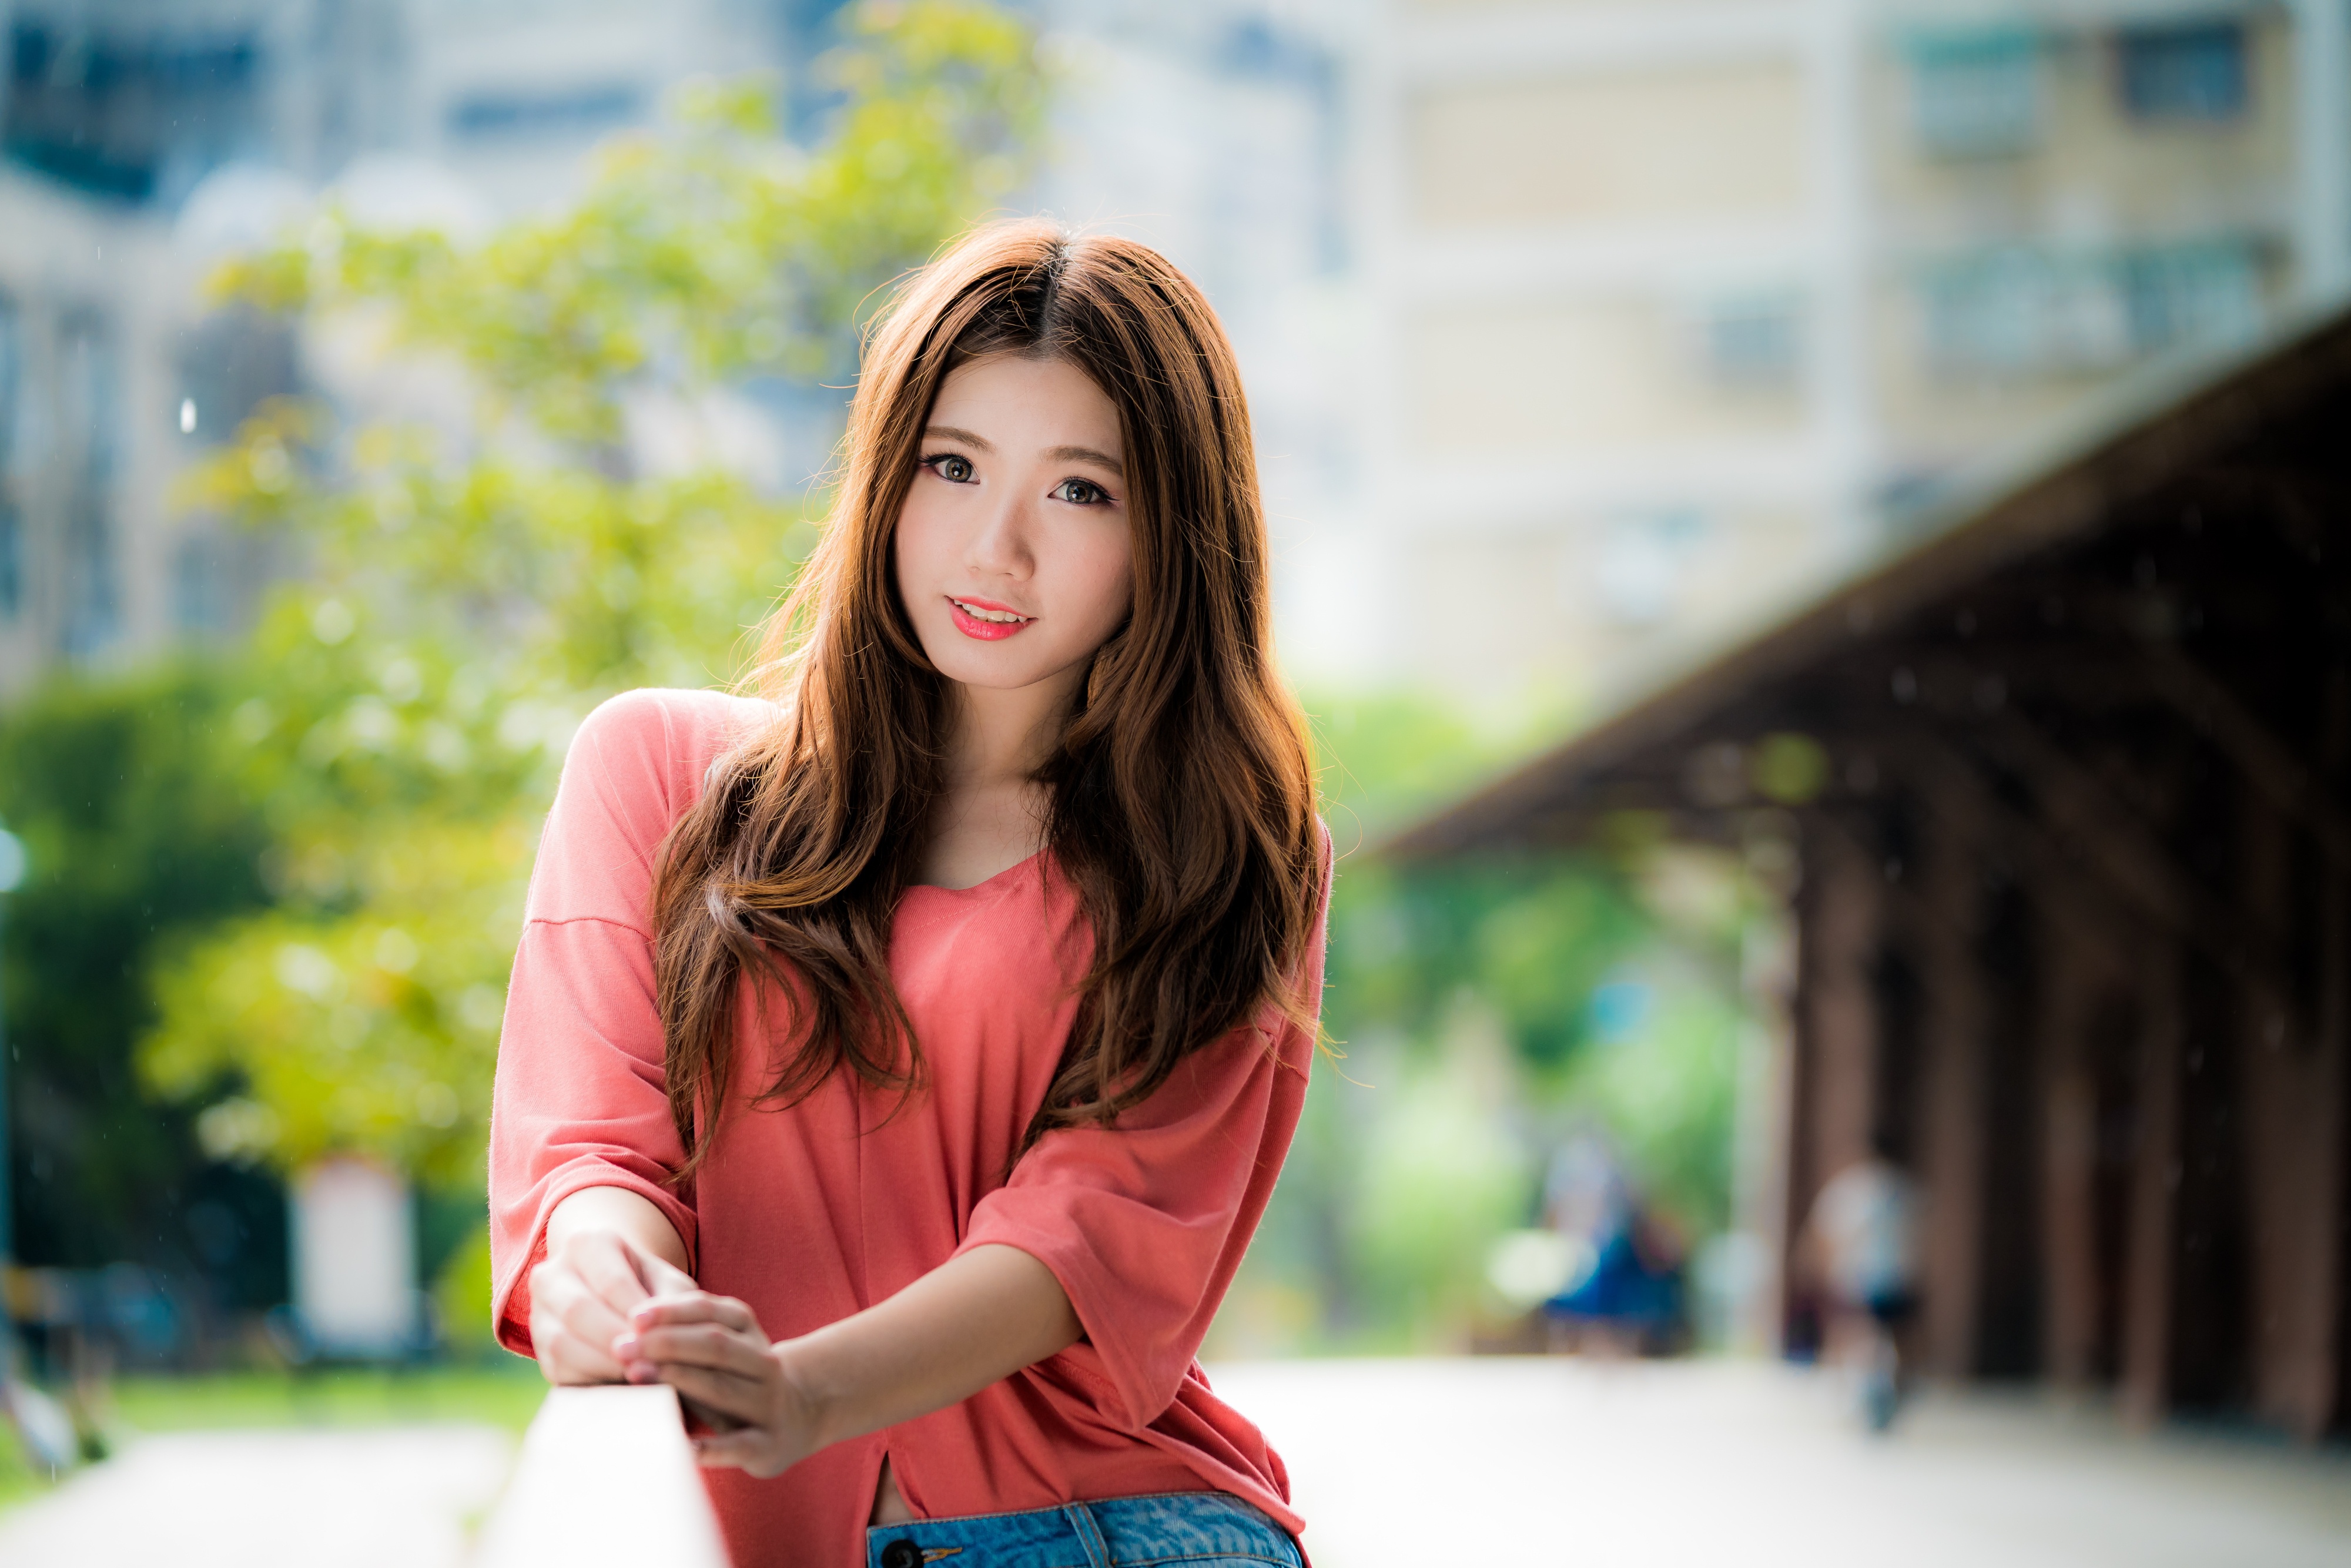 Download Lipstick Depth Of Field Brunette Smile Model Woman Asian 4k Ultra Hd Wallpaper By Luke Luo 0762